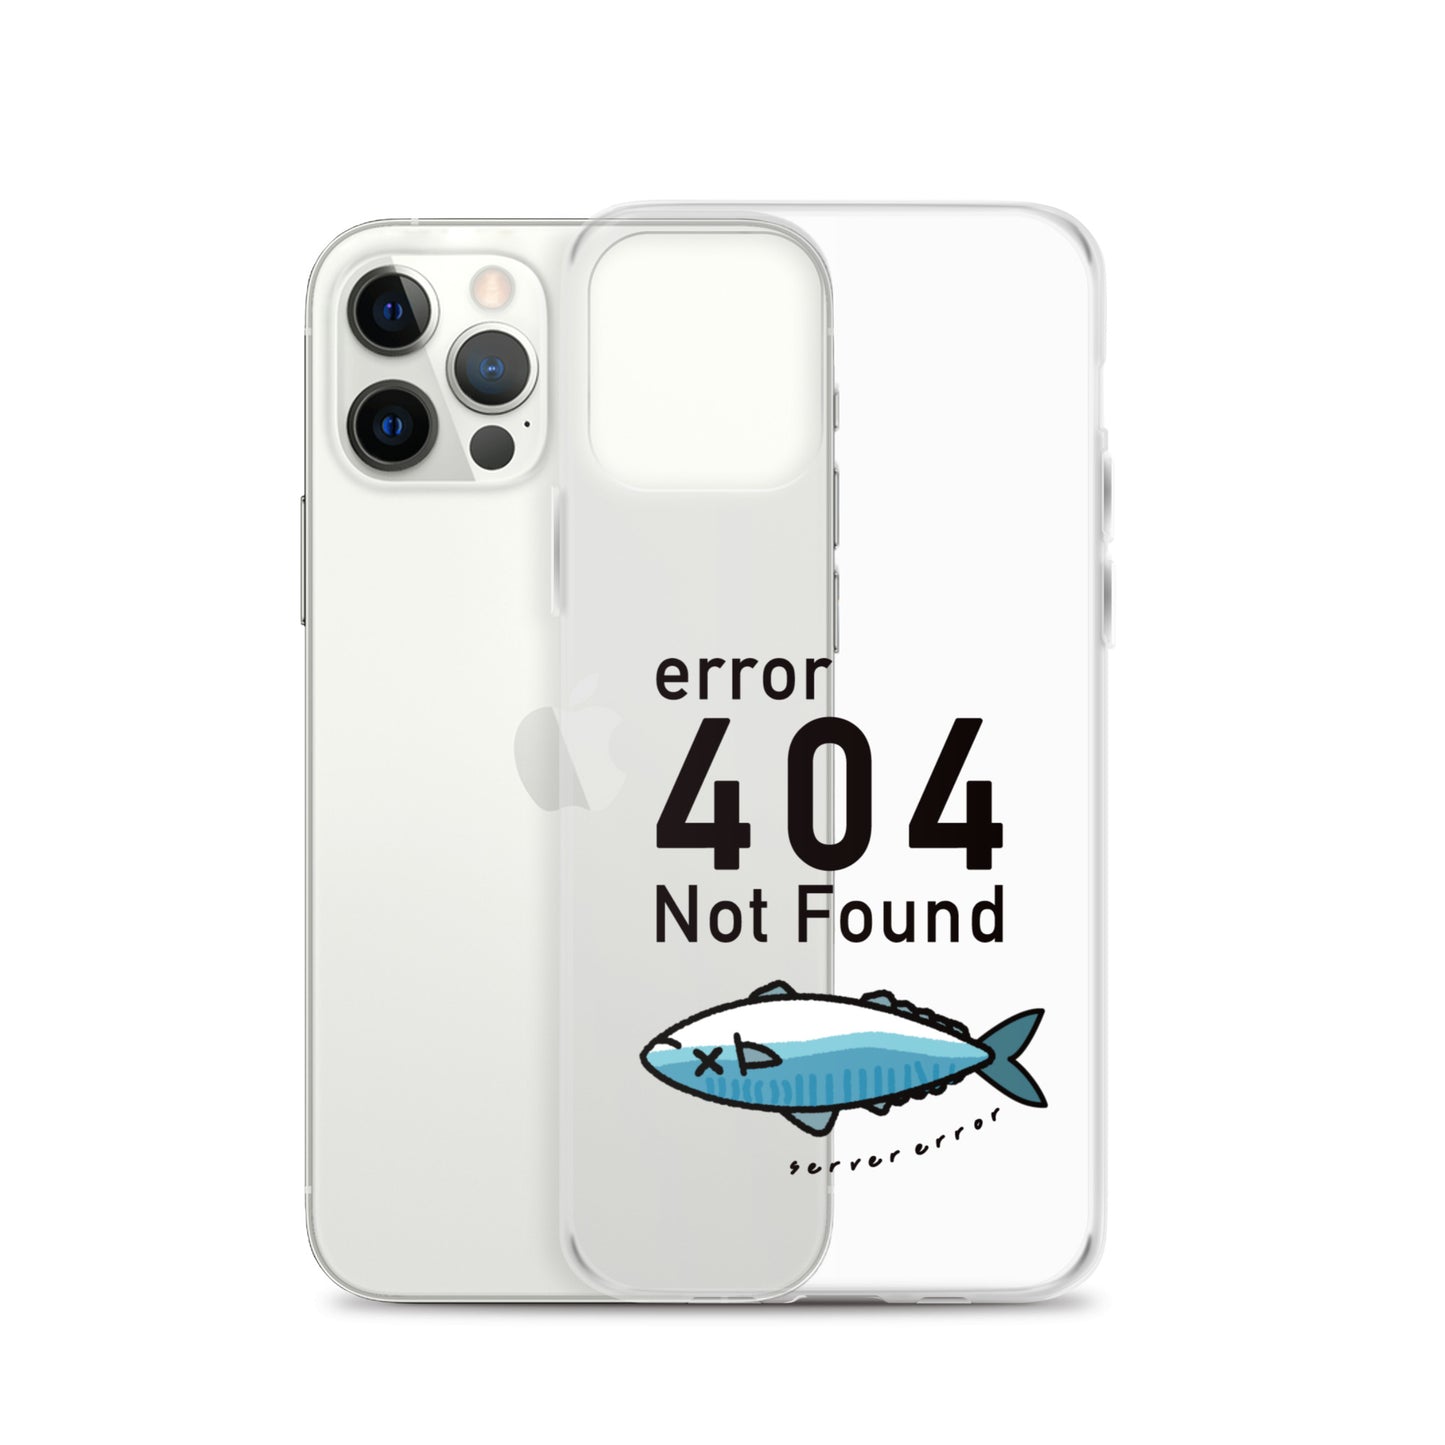 404 Not found 鯖こみ スマホ iPhoneケース